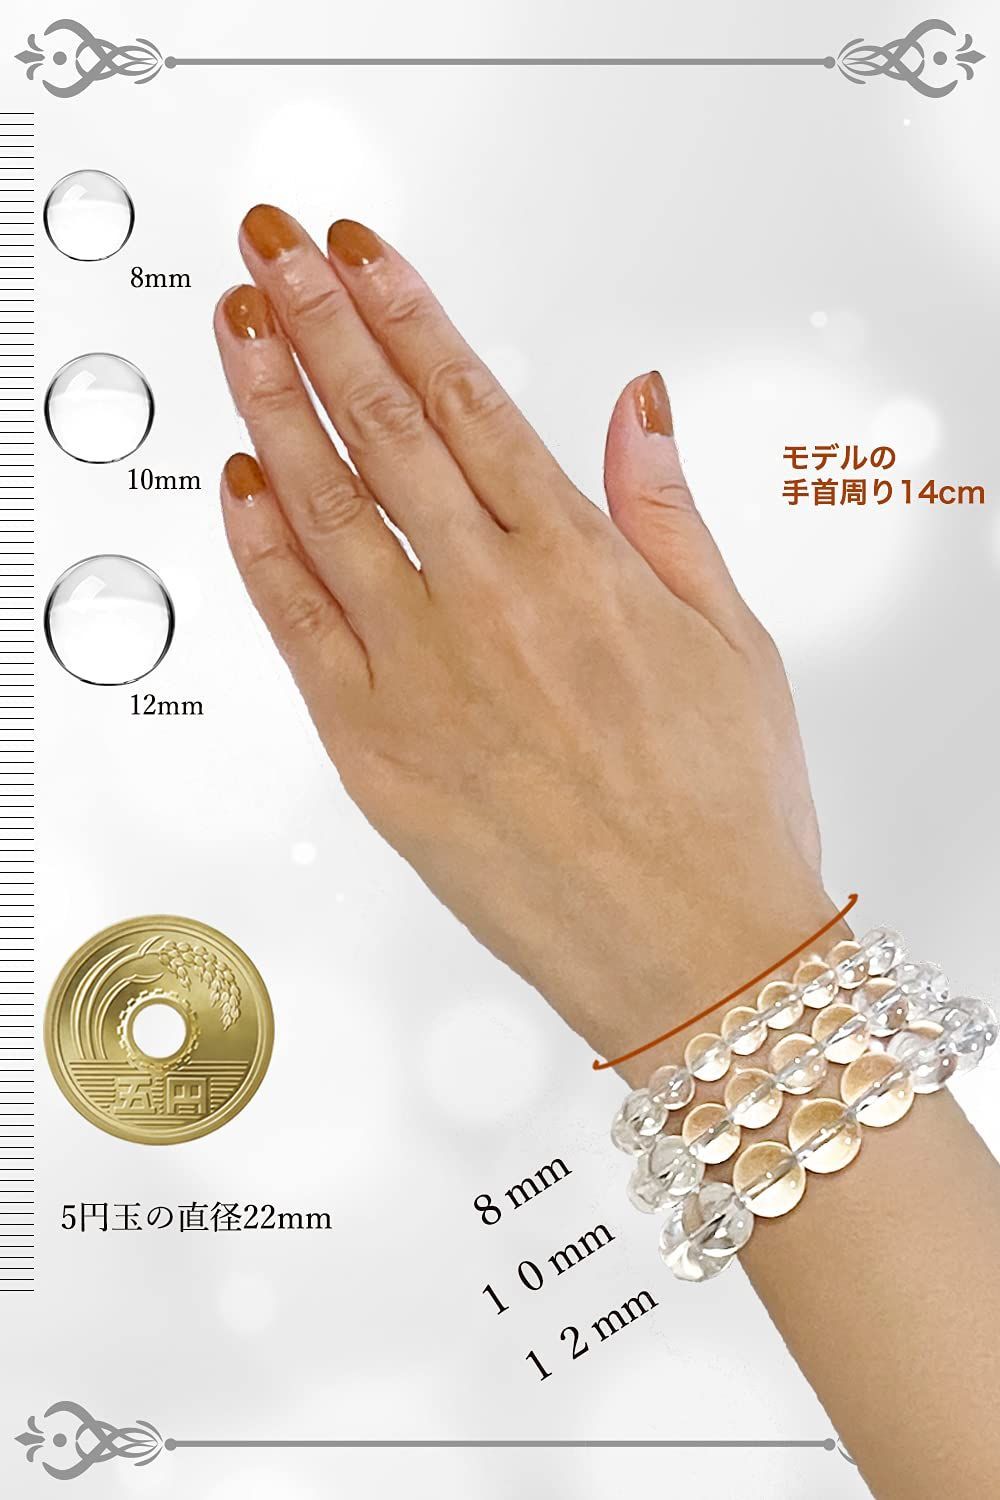 贅沢 hibikurasu水晶 クリスタル パワーストーン ブレスレット 数珠 ブレス 5212.20円 アクセサリー